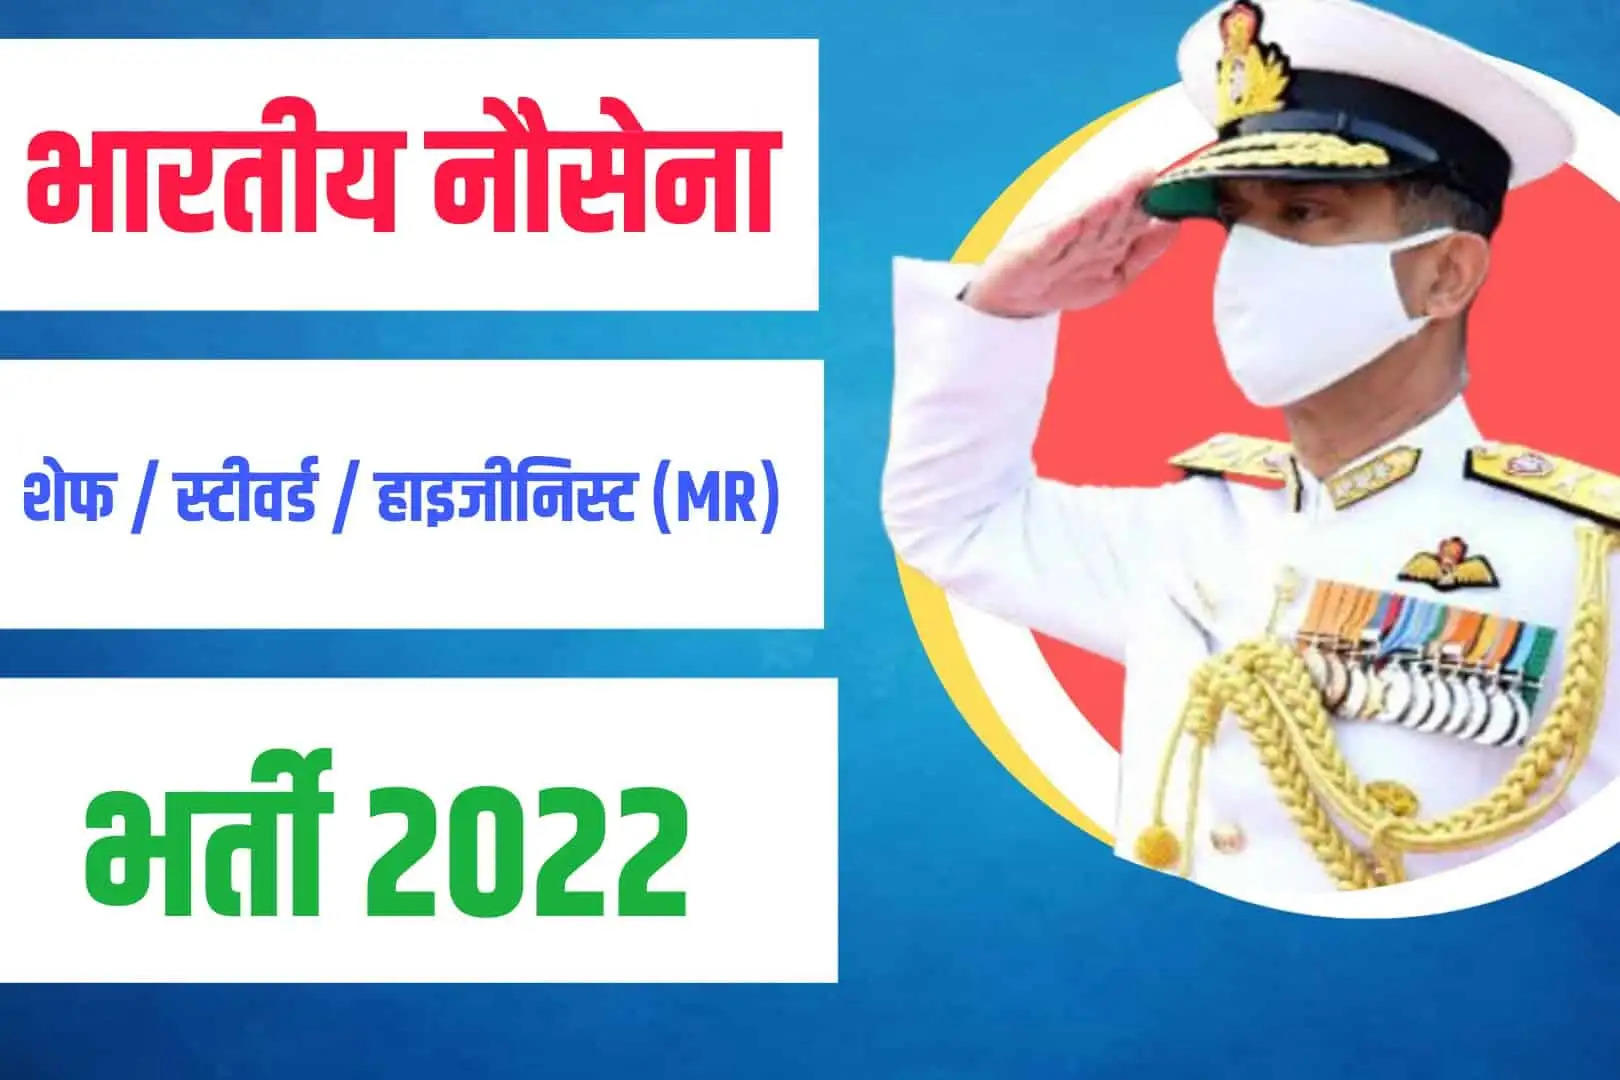  Indian Navy Agniveer (MR) May 2023 Online Form: भारतीय नौसेना में महिला व पुरूष के लिए मई 2023 बैच कोर्स भर्ती के लिए नोटिफिकेशन जारी